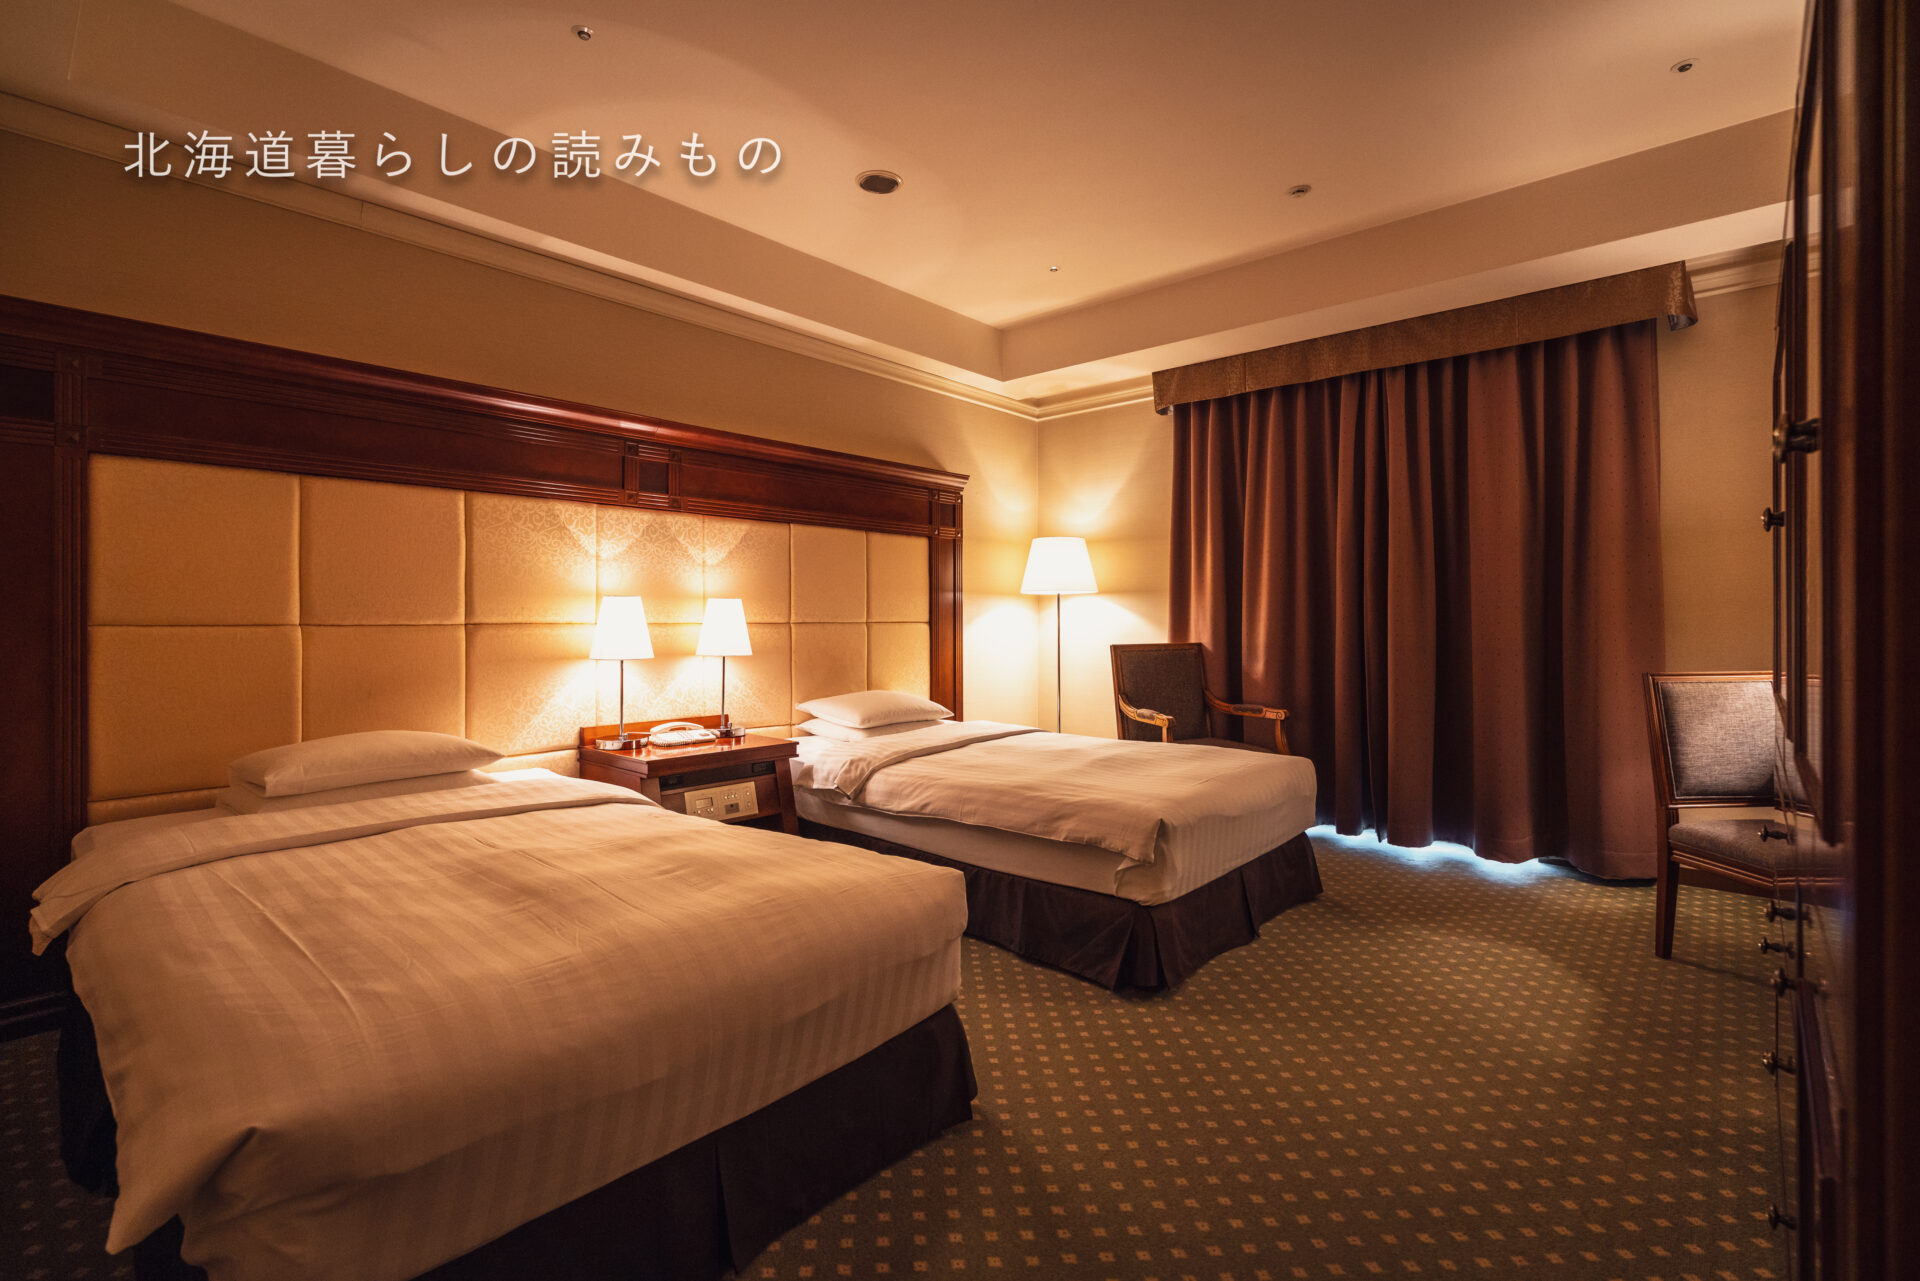 プレミアホテル -TSUBAKI- 札幌 Premier Hotel Tsubaki Sapporo